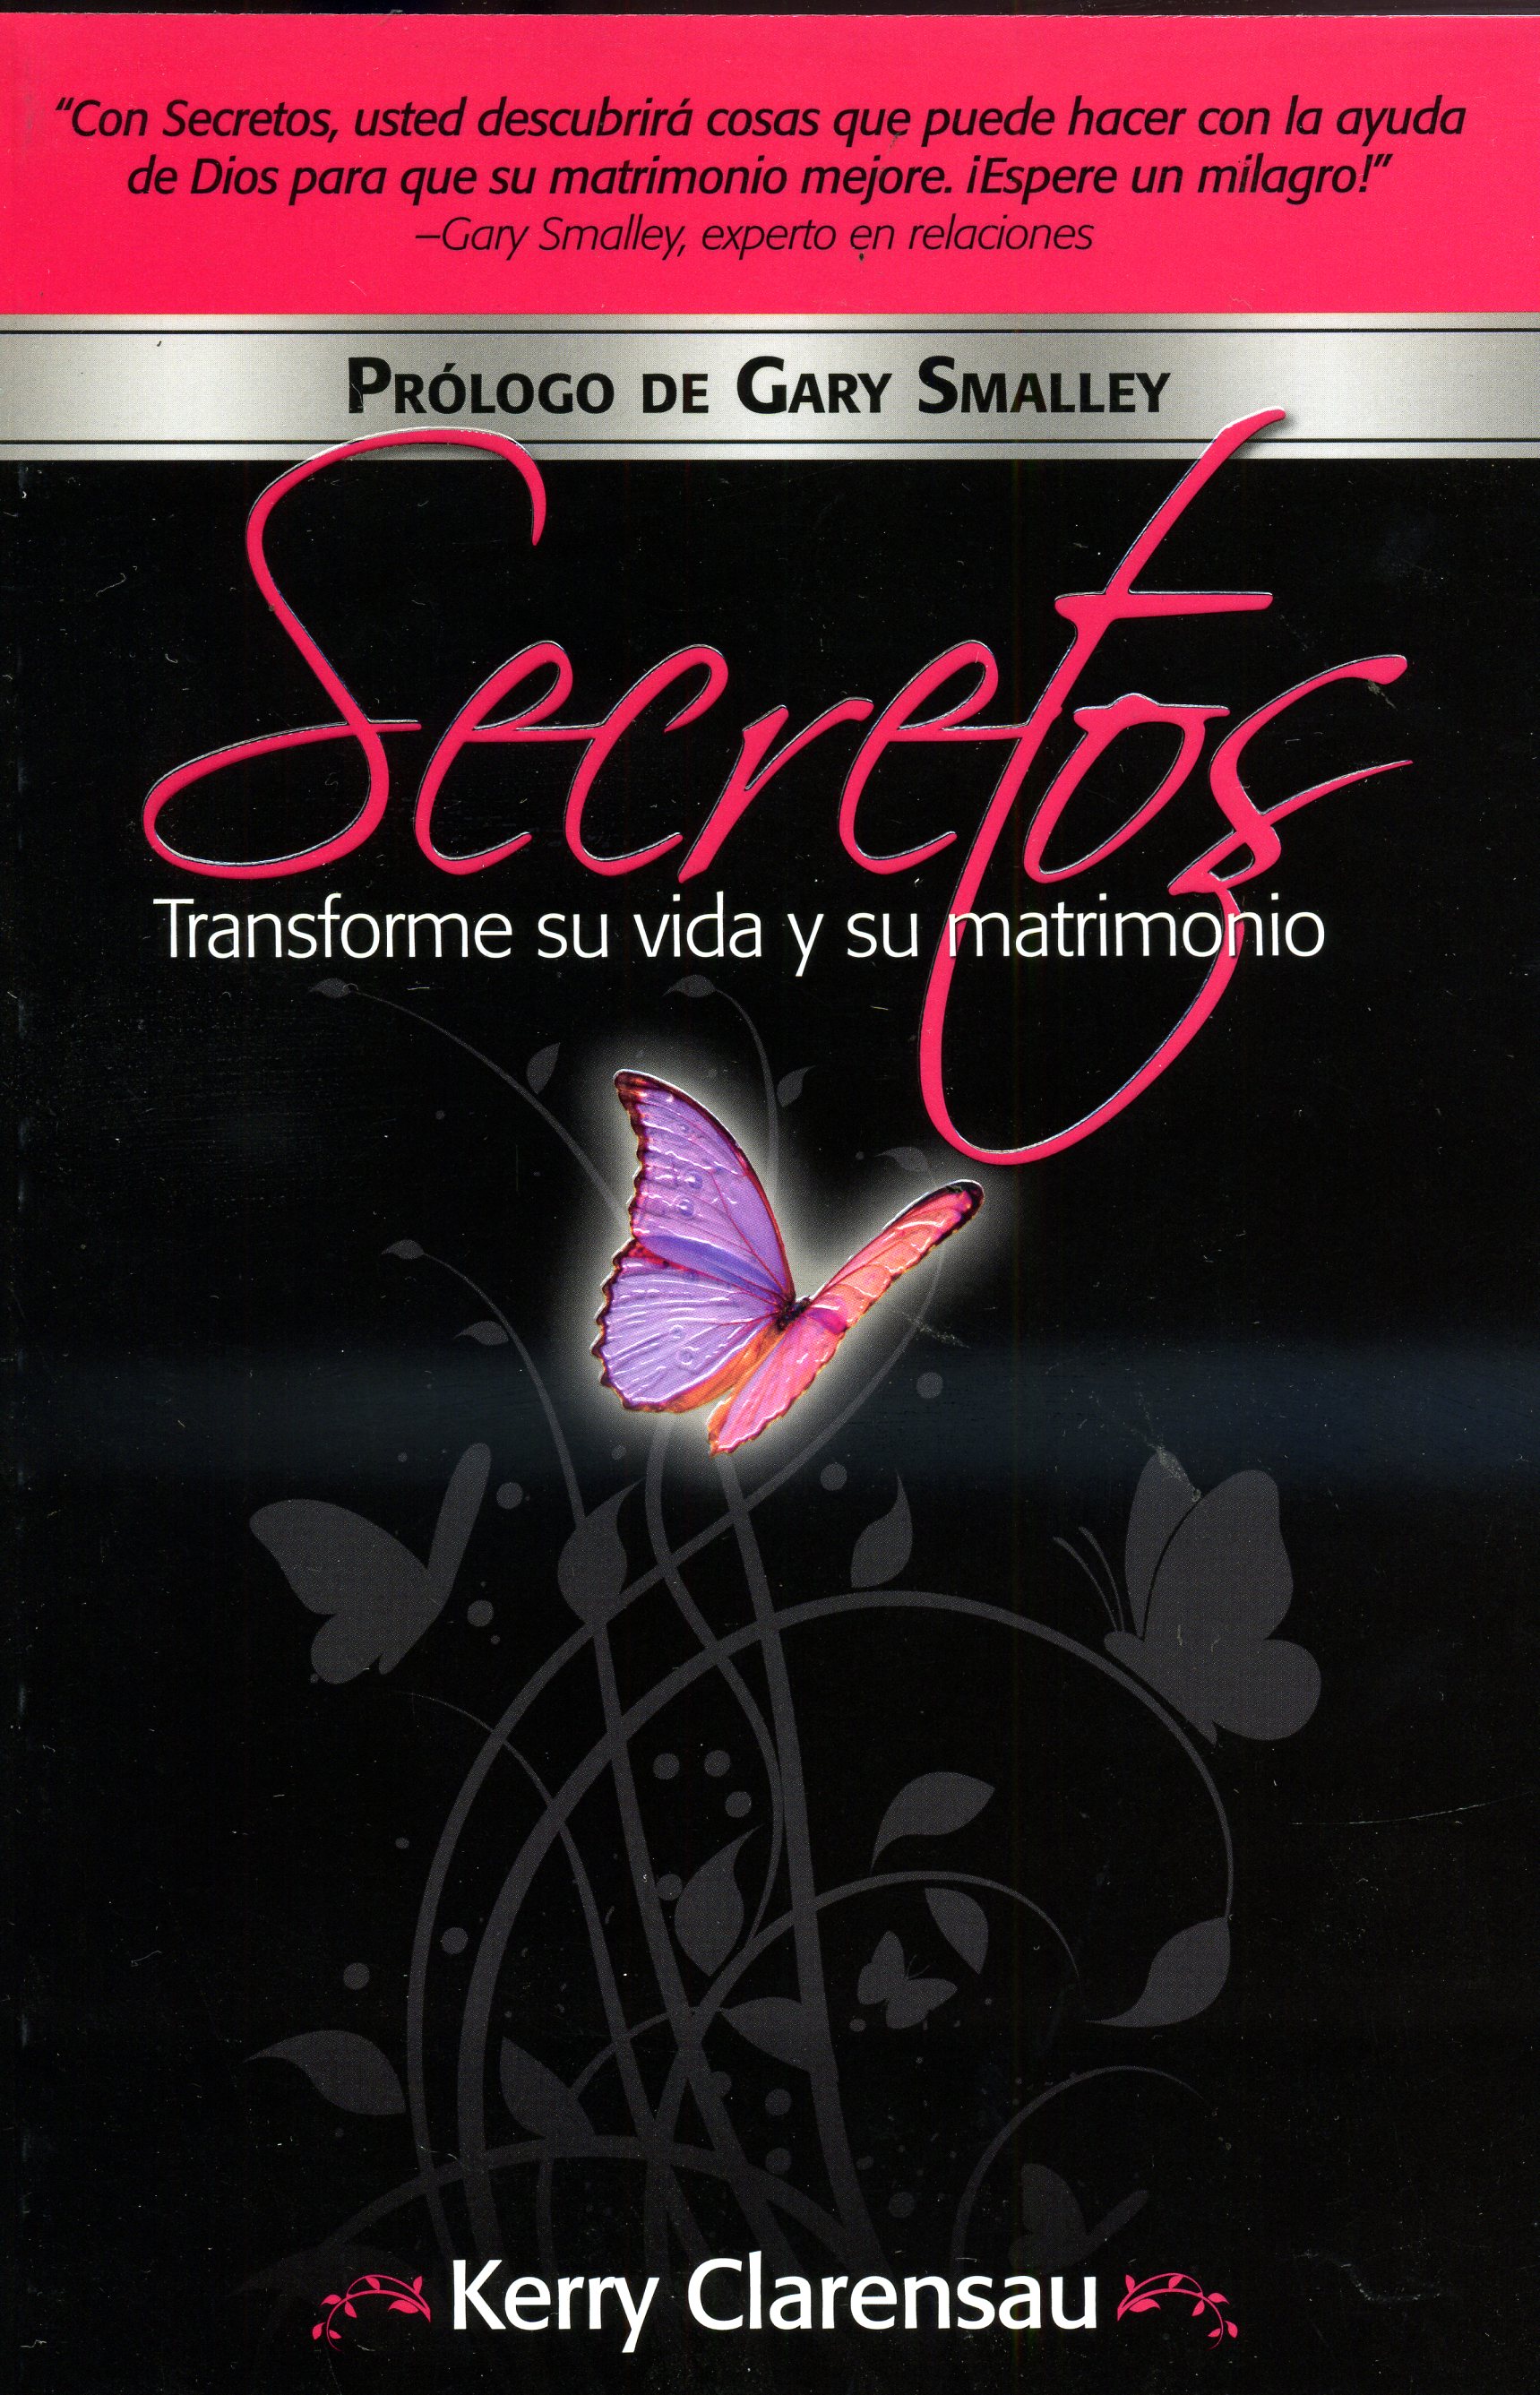 Secretos